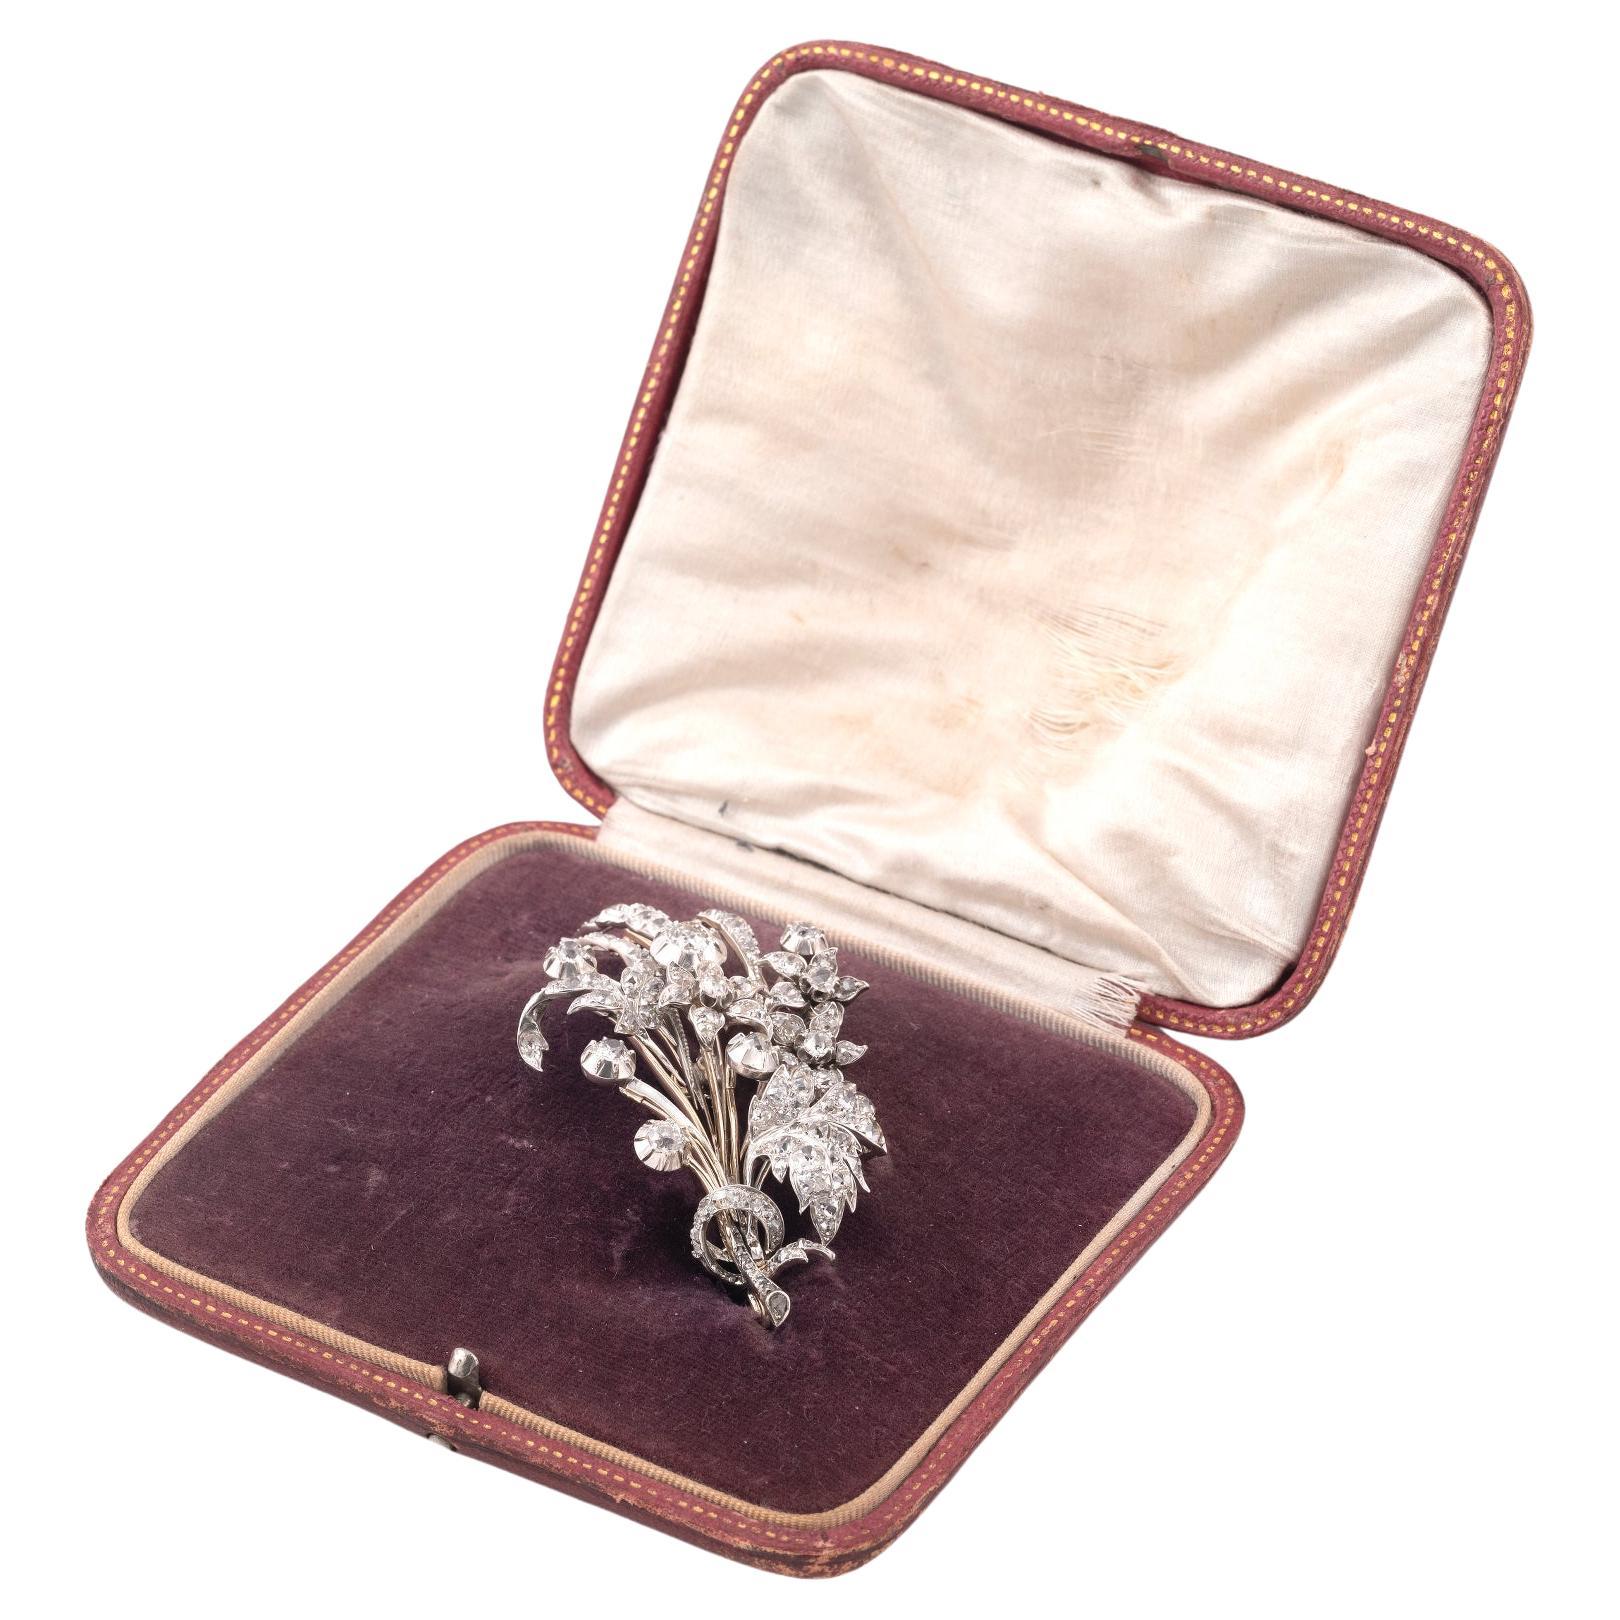 Viktorianische Diamantbrosche, Ende des 19. Jahrhunderts, in Form eines Blumenstraußes, besetzt mit Diamanten im Rund- und Rosenschliff, ca. 6,5ct, Länge 8cm.
Mit passendem Etui.